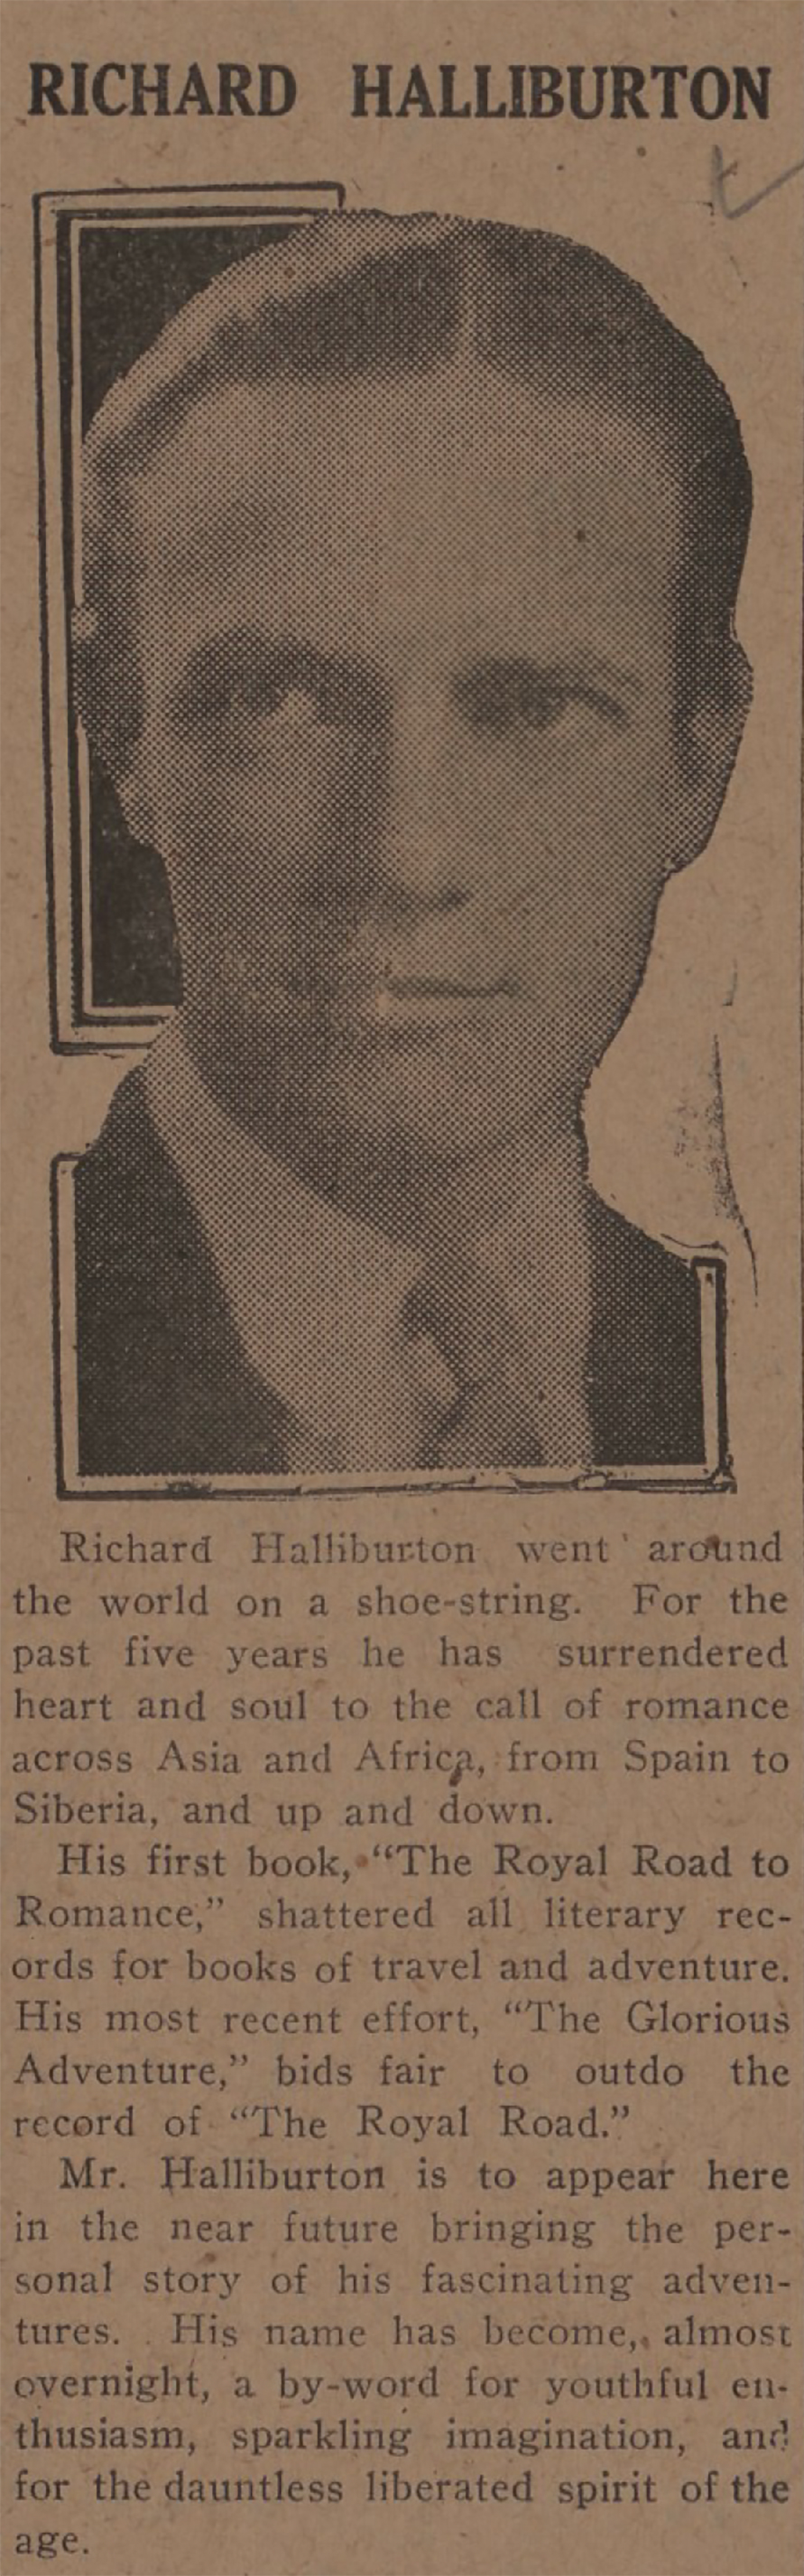 Lariat February 15 1929